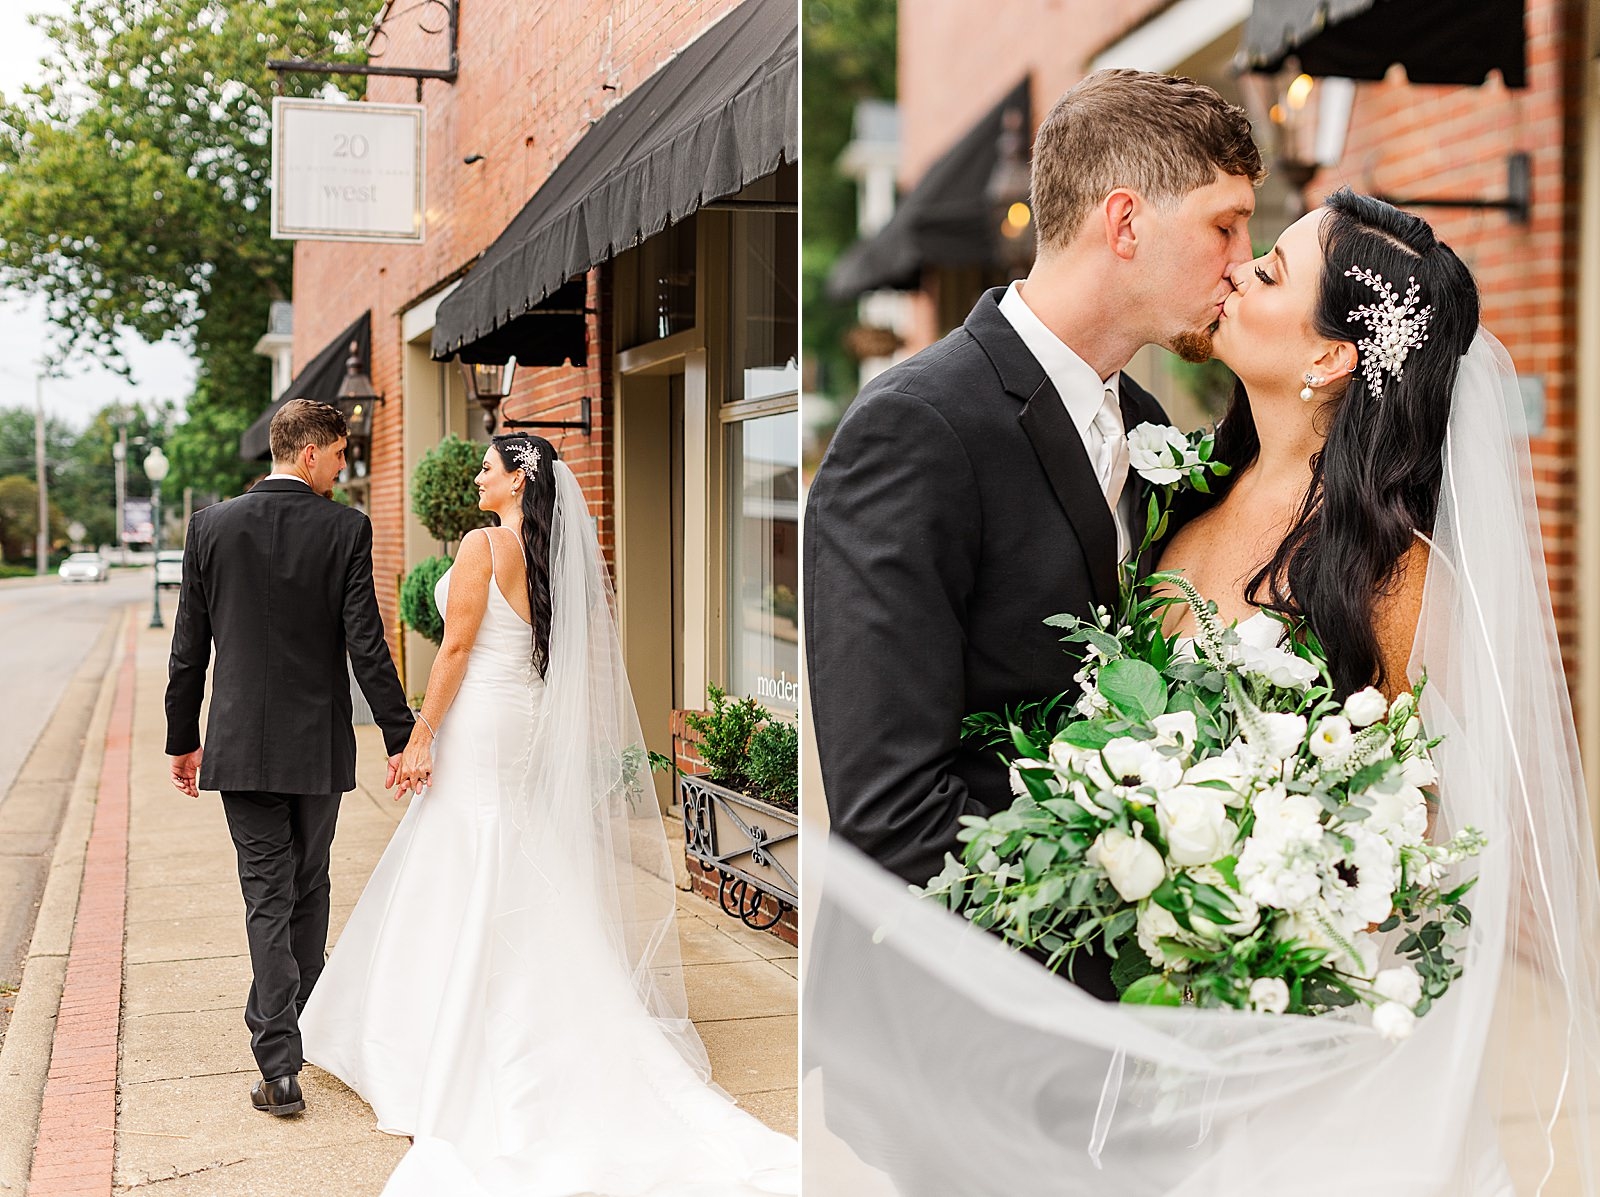 A Beautiful 20 West Wedding in Downtown Newburgh | Bret and Brandie165.jpg